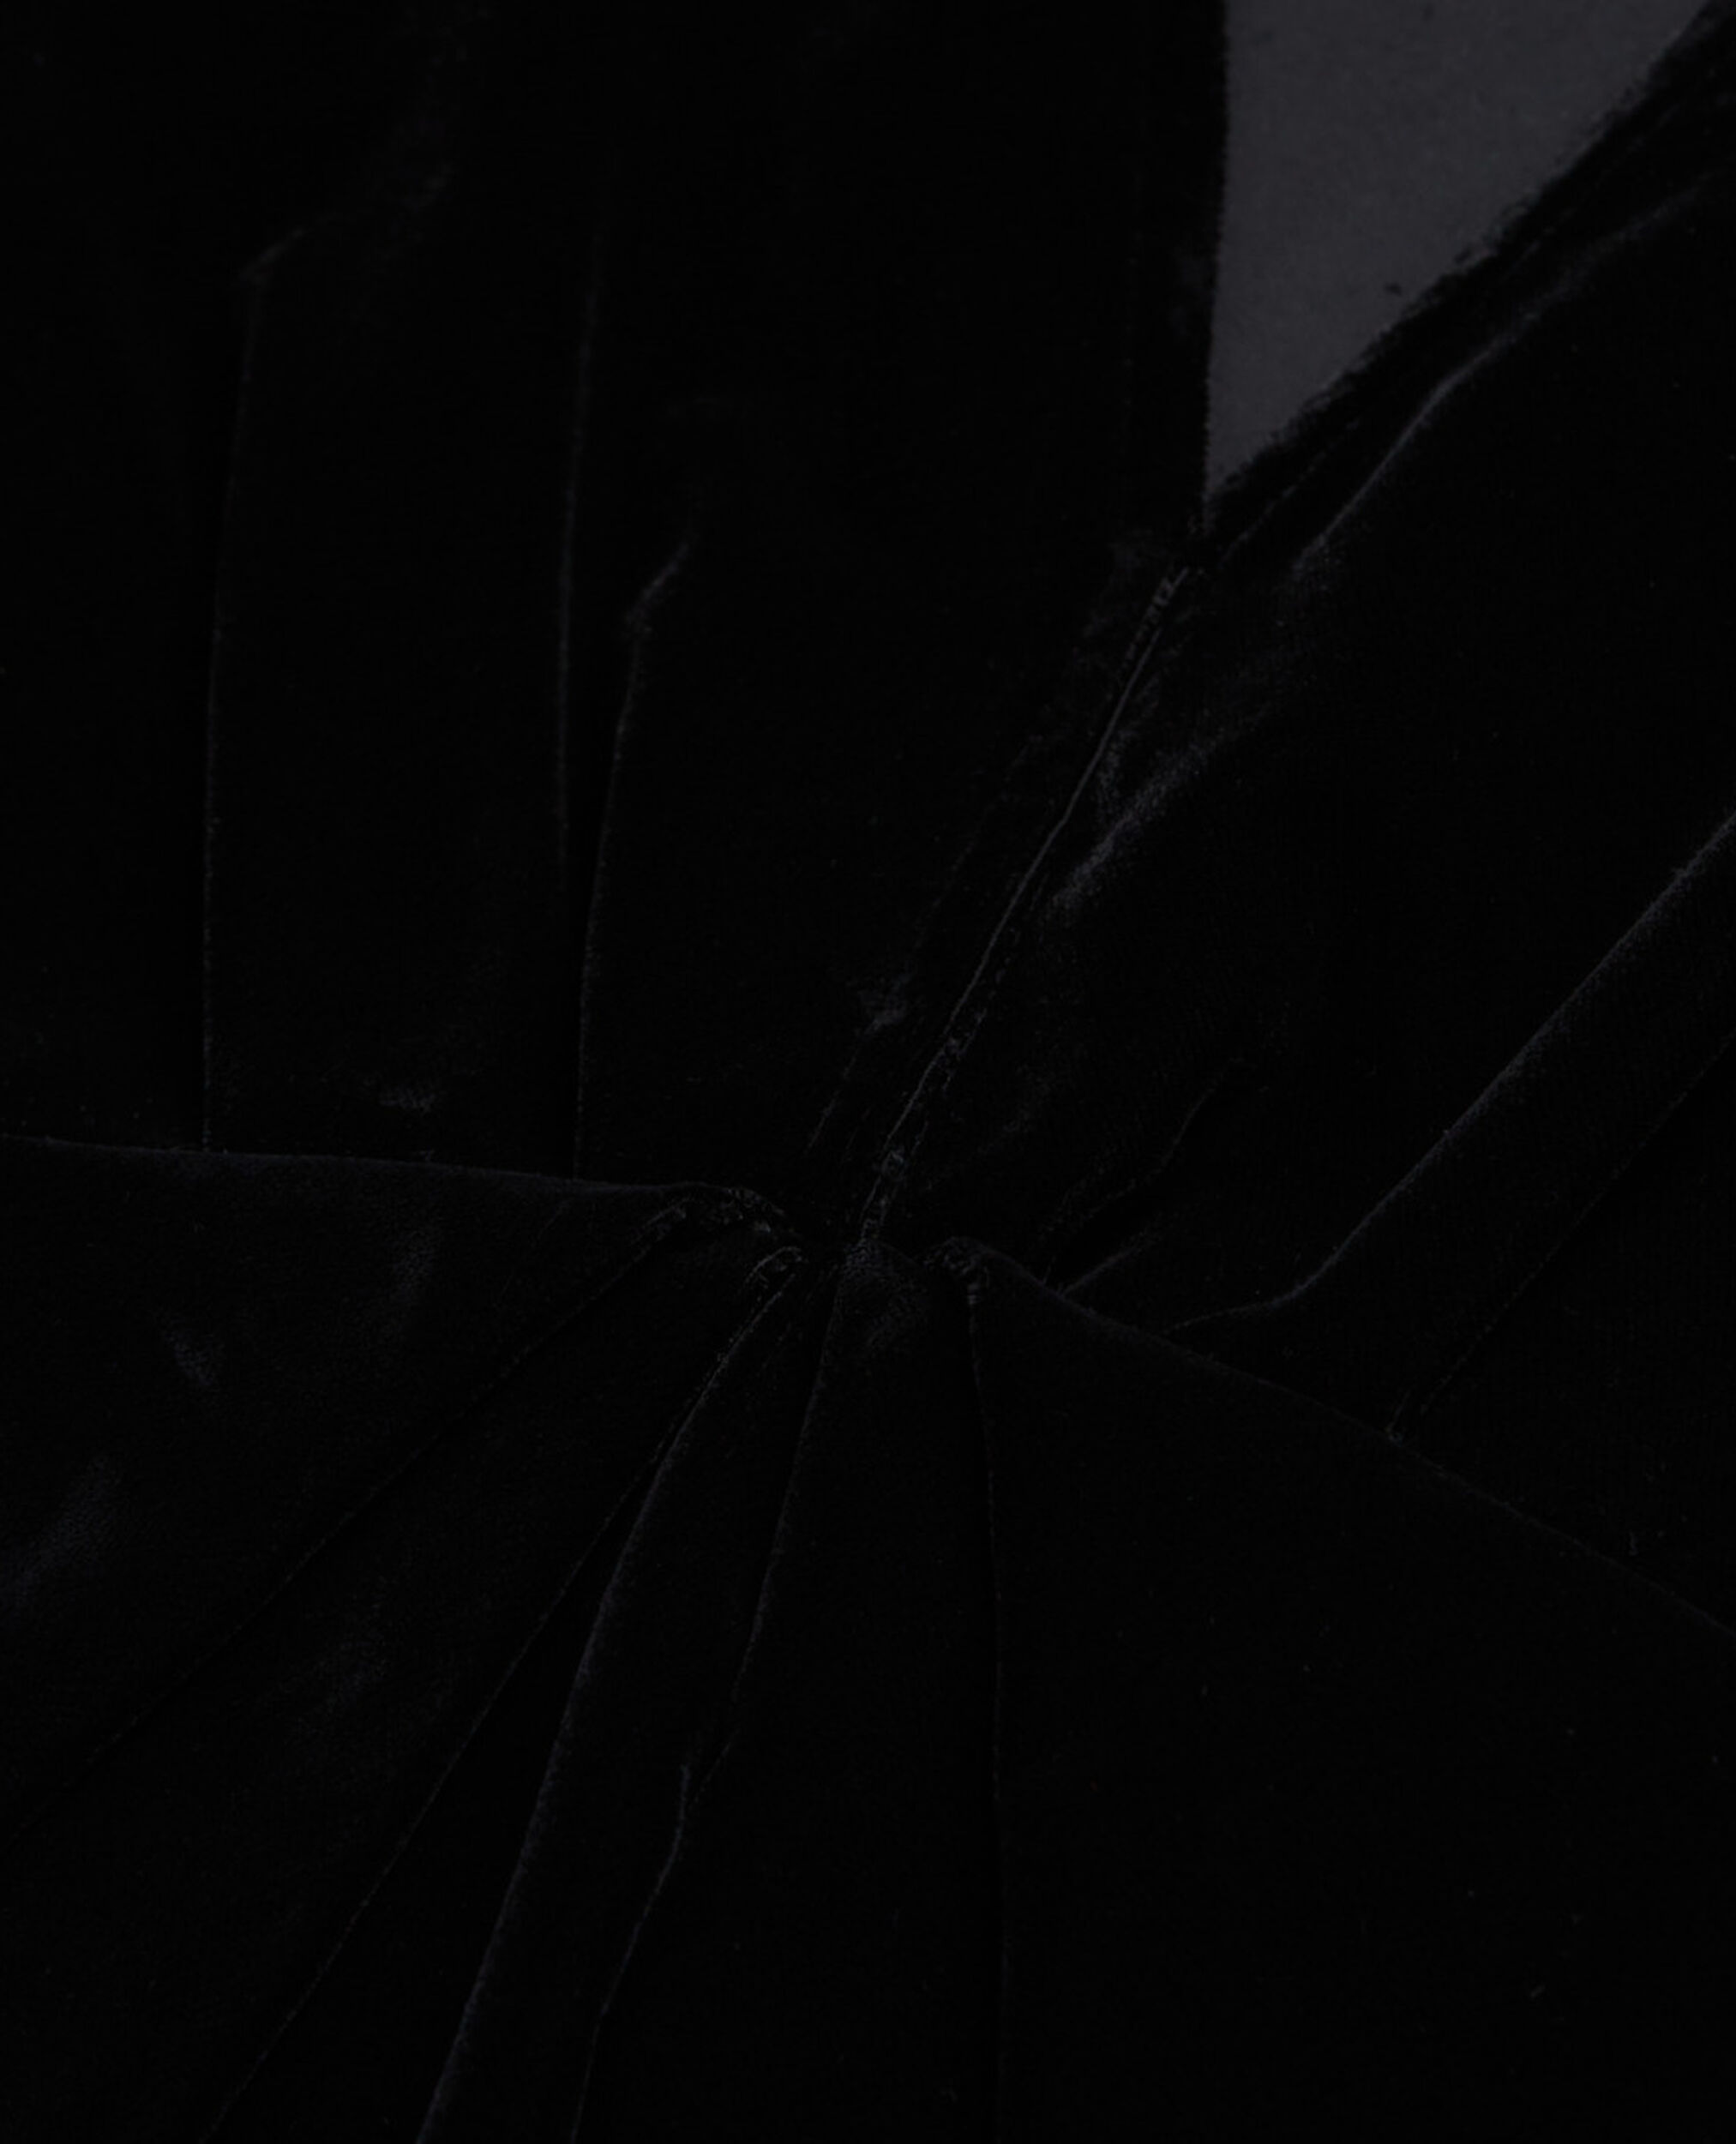 Vestido corto terciopelo negro, BLACK, hi-res image number null